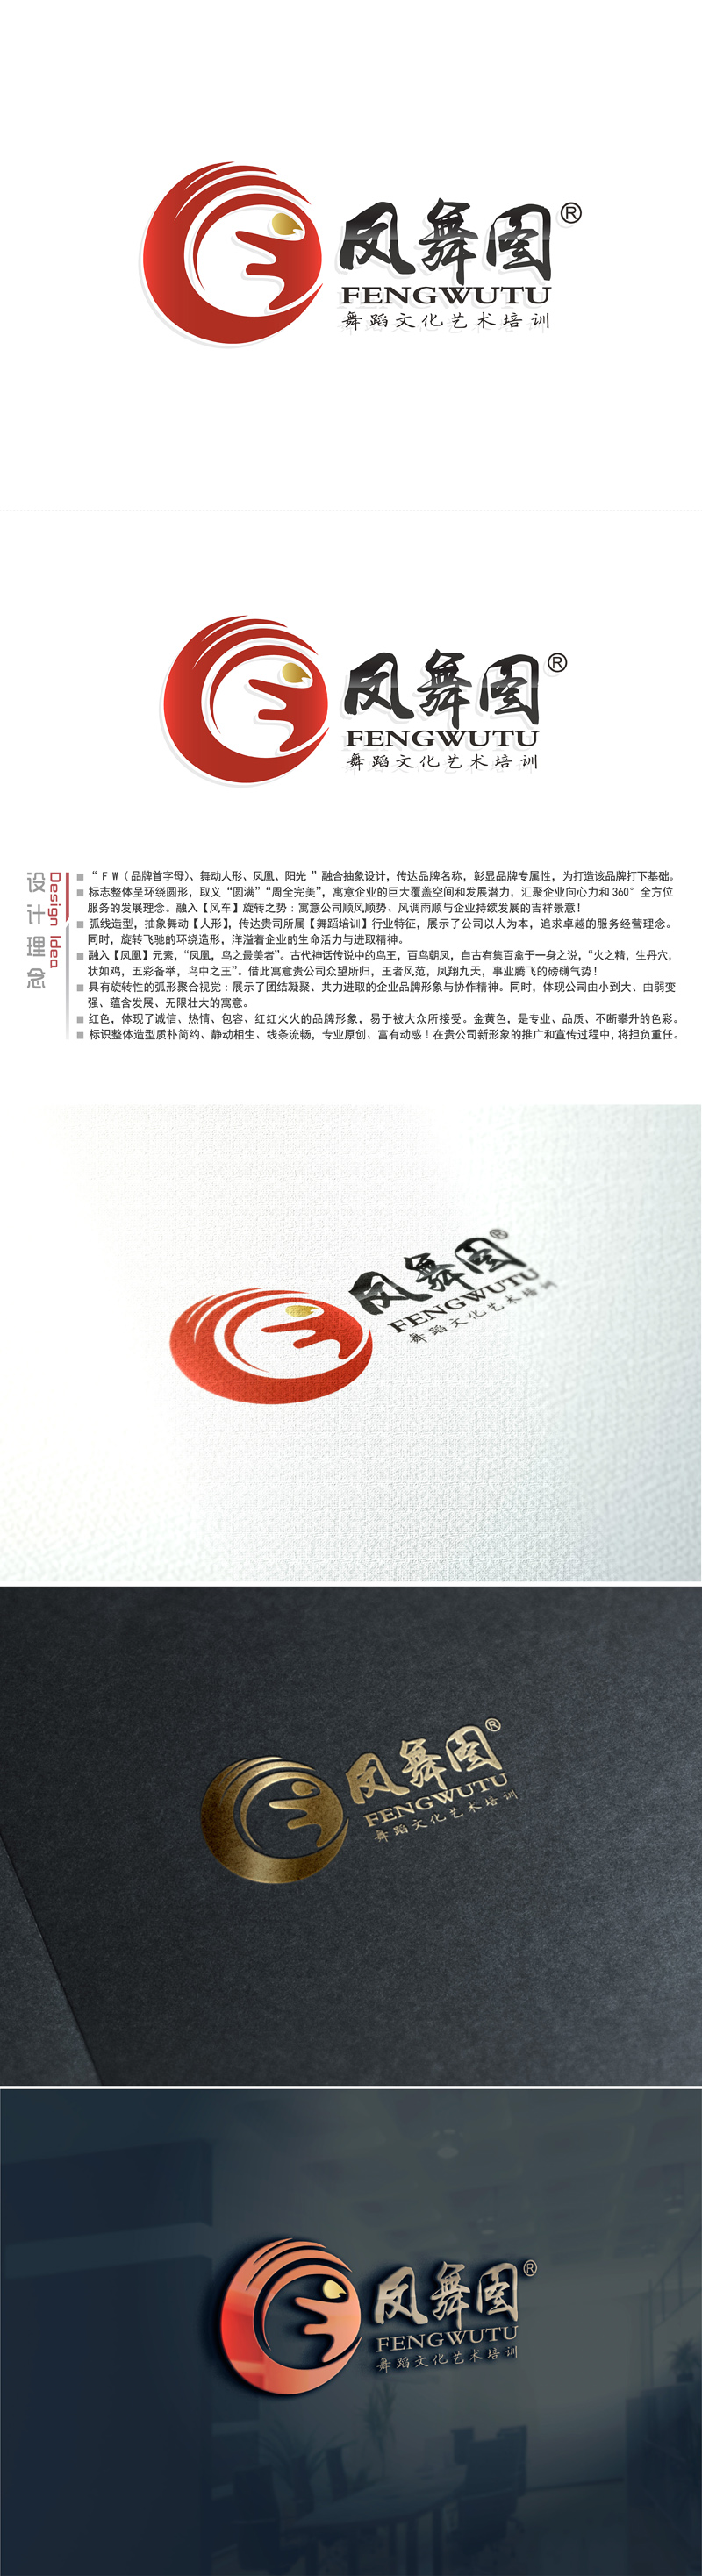 黎明锋的深圳市凤舞图舞蹈文化艺术培训有限公司logo设计